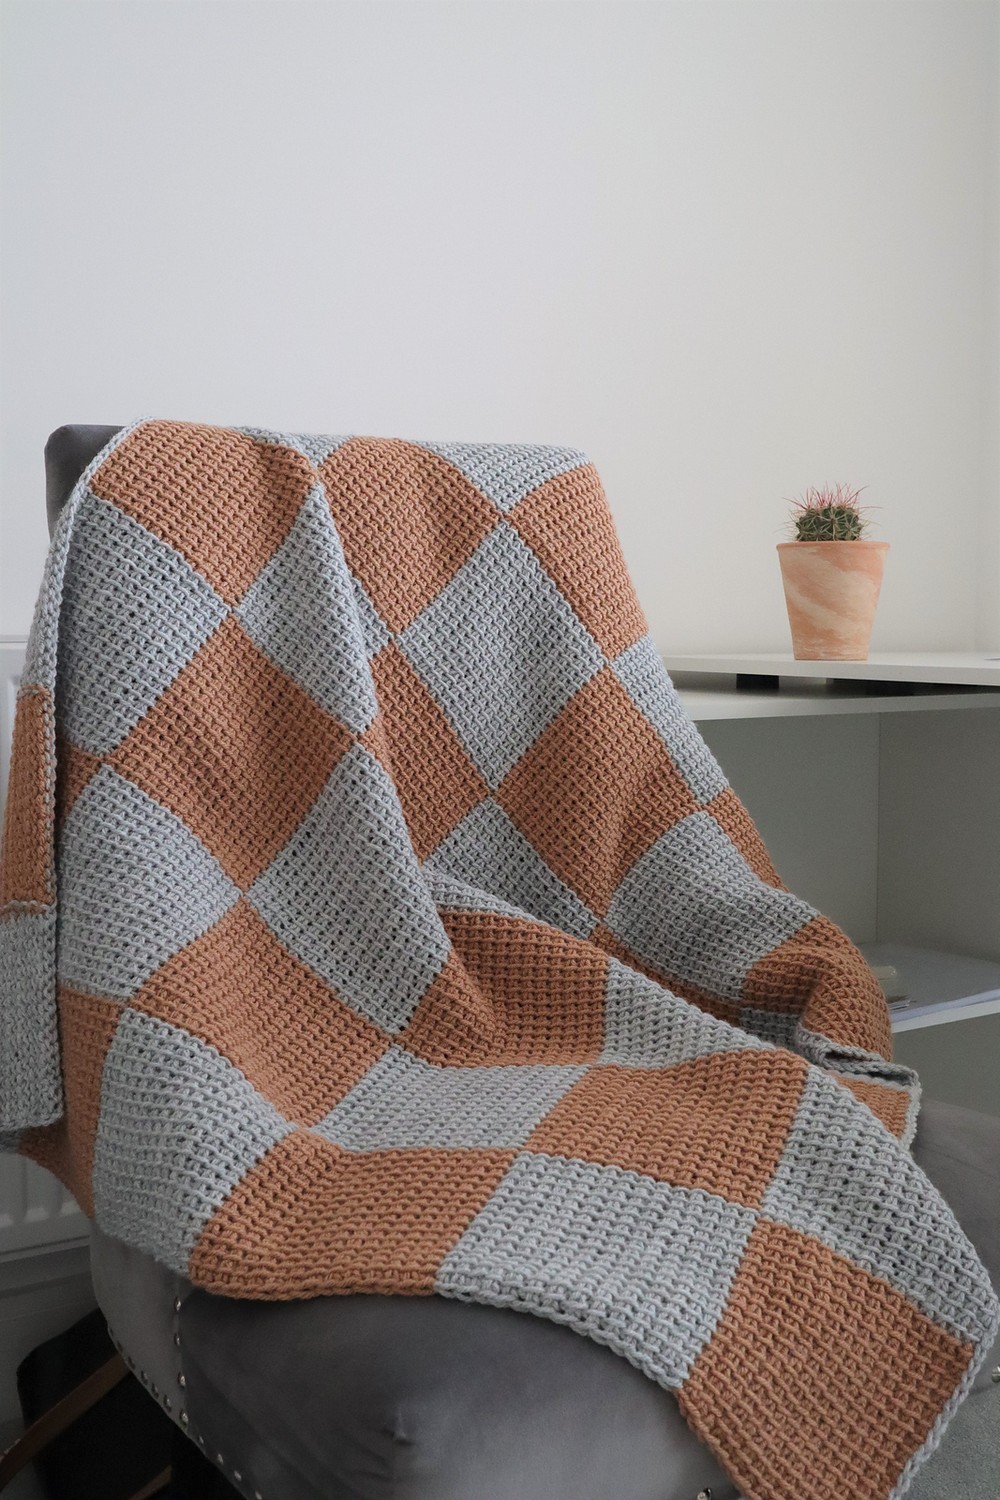 How to Crochet Elsam Blanket